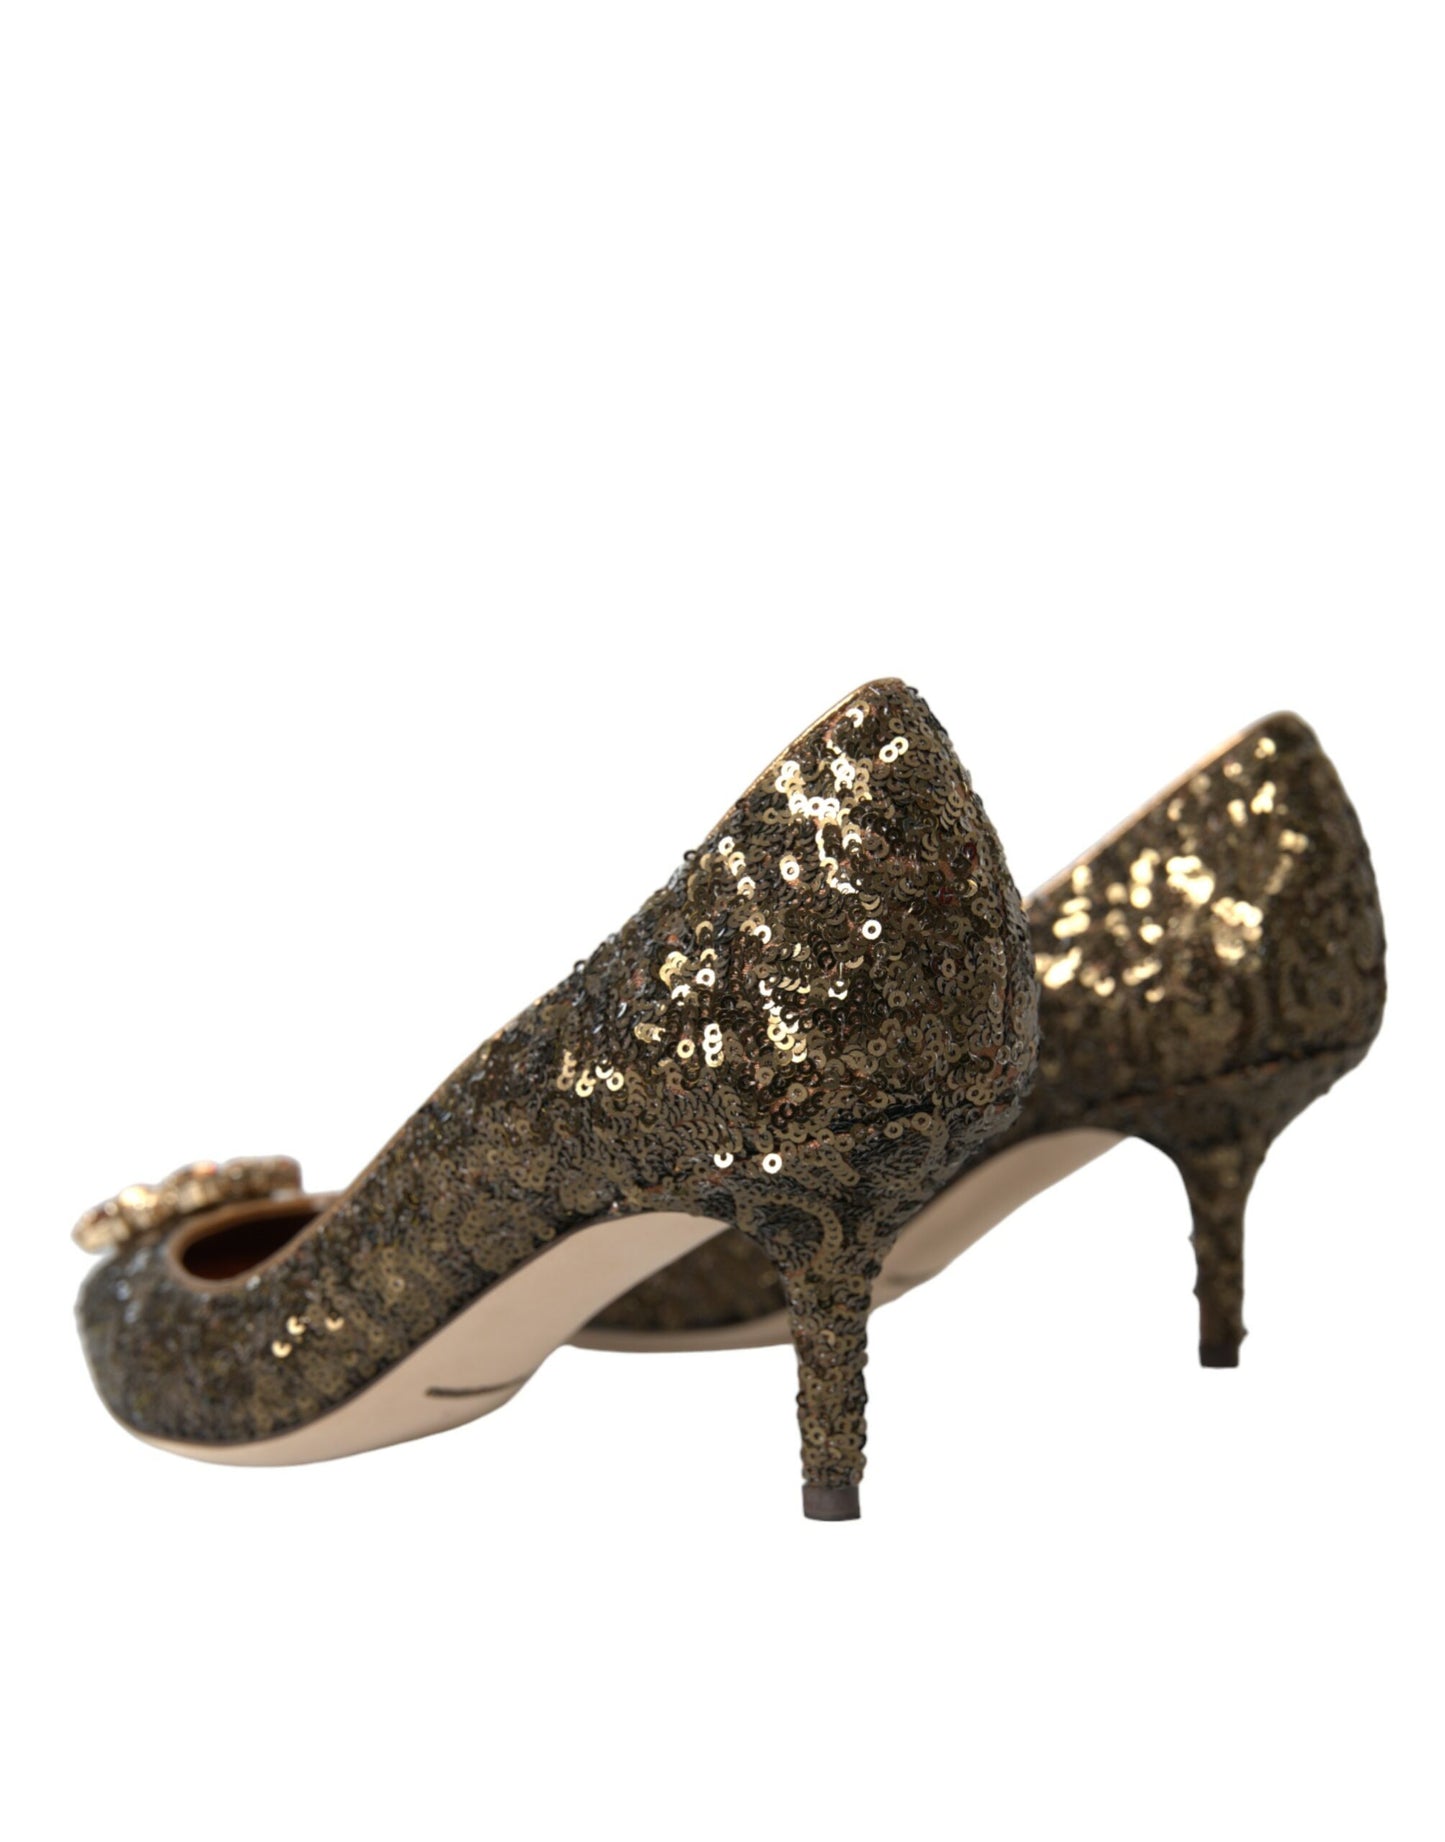 Dolce & Gabbana Gold Sequin Crystals Bellucci Heels Pumps Shoes